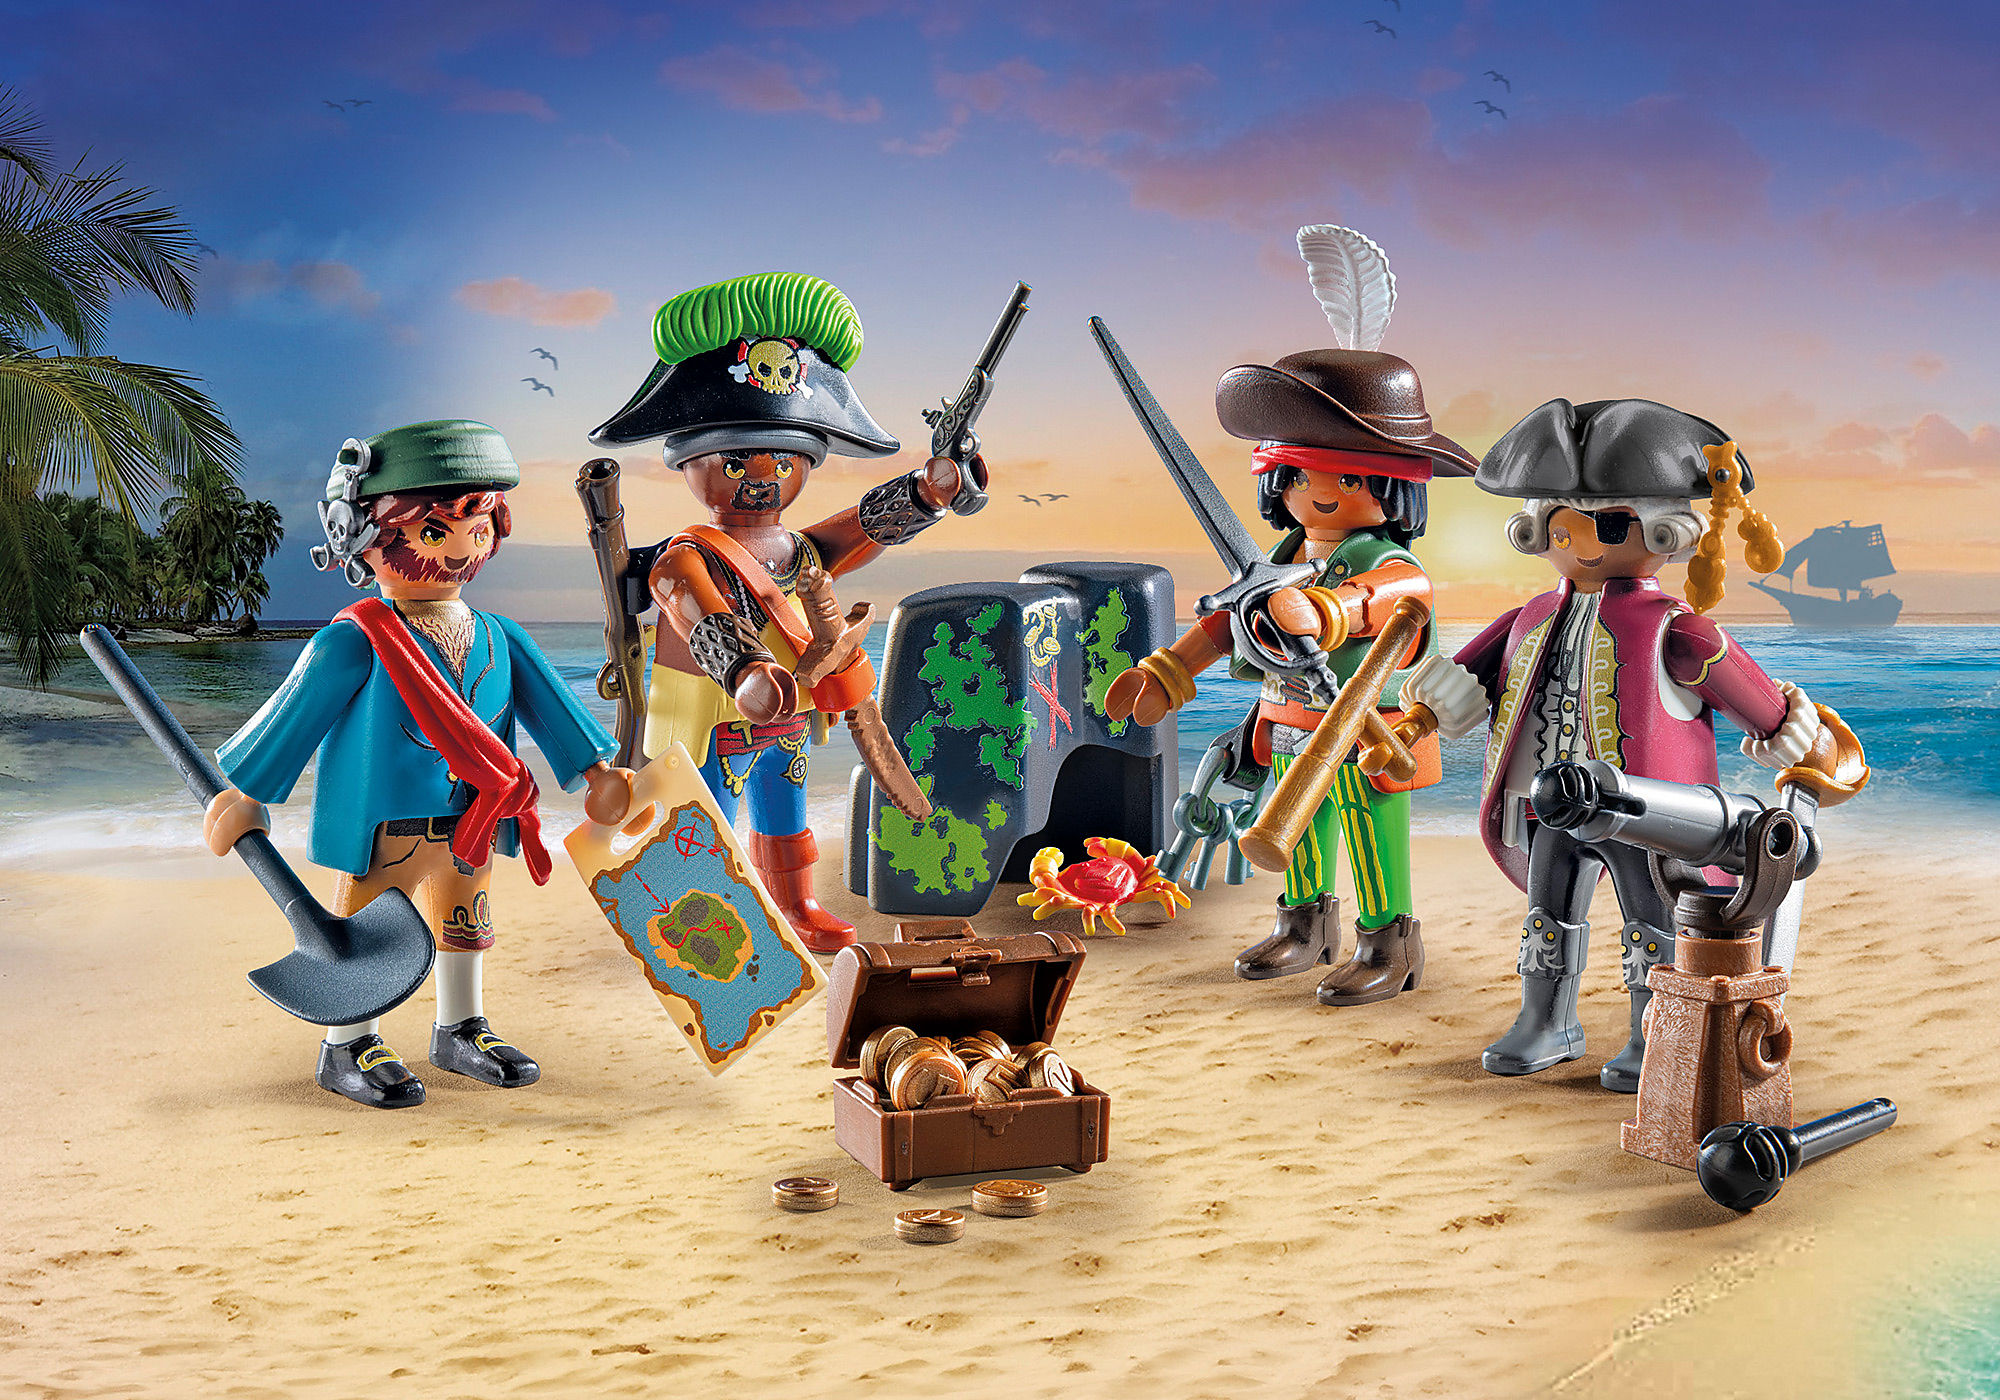 Playmobil ® 70148 - Capitaine Pirate / Série 20 Garçon - Boy Neuf - New -  Nuevo